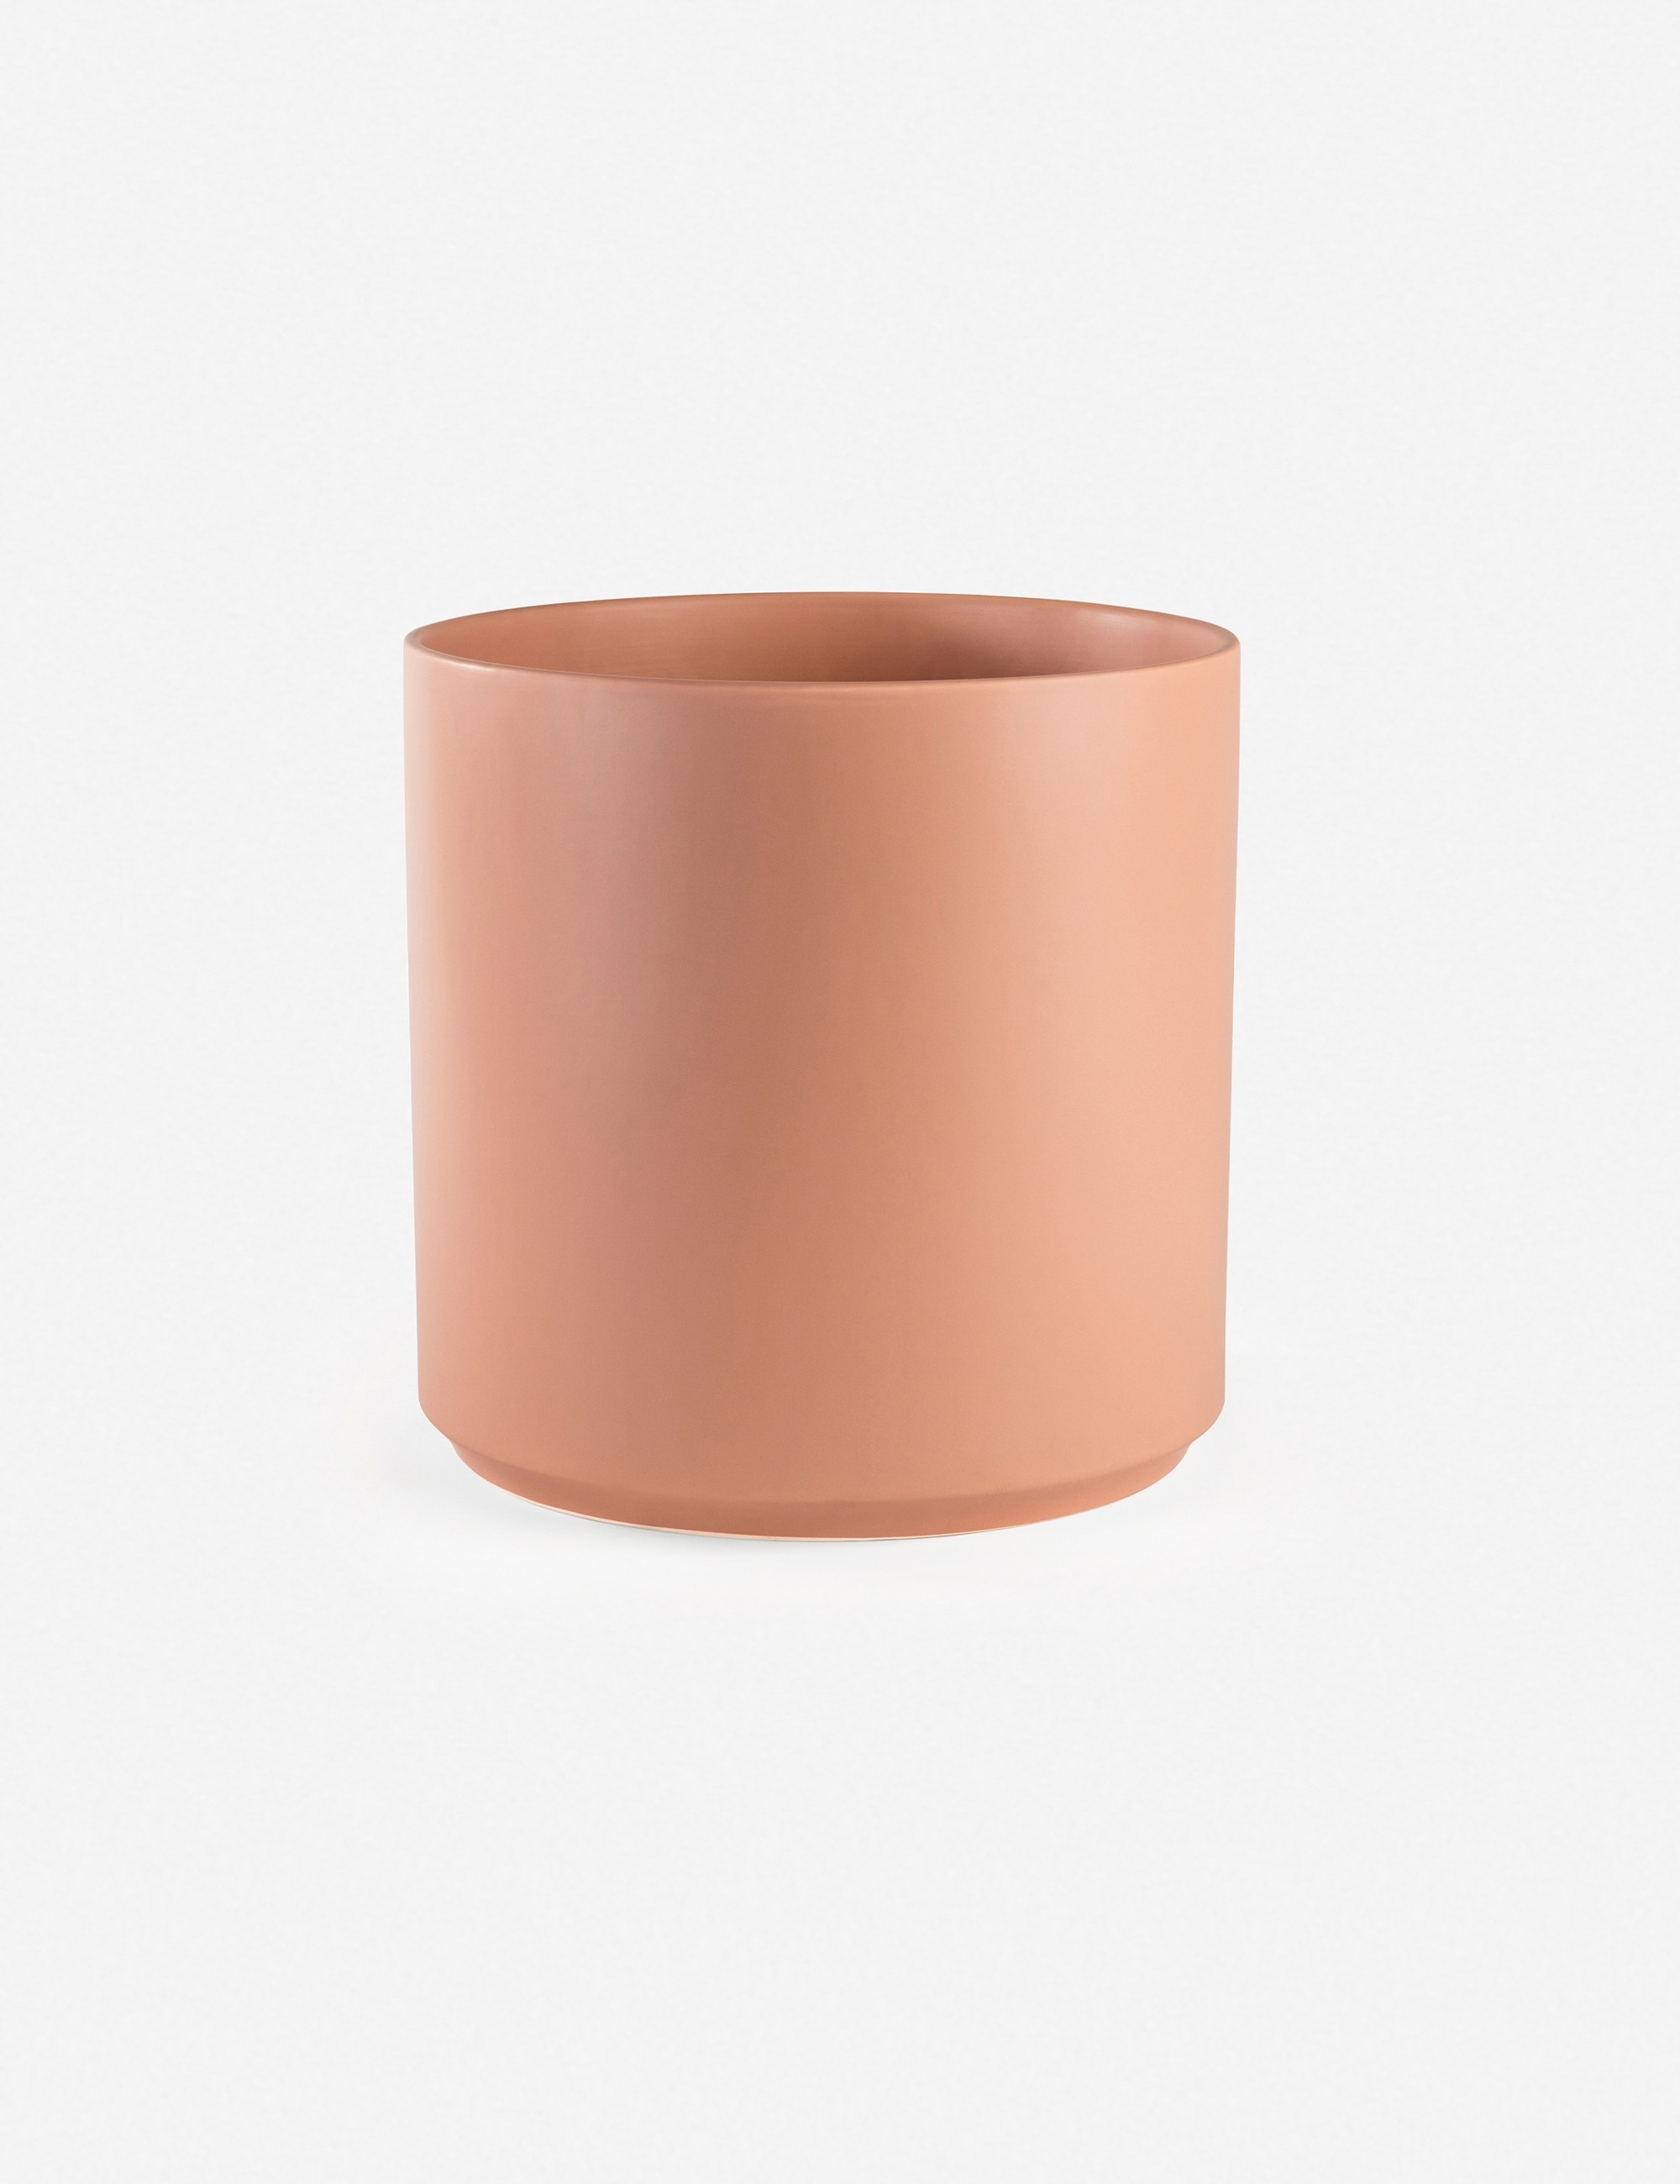 LBE Design Ceramic Planter, Peach 10"Dia x 9"H - with stand - Image 5